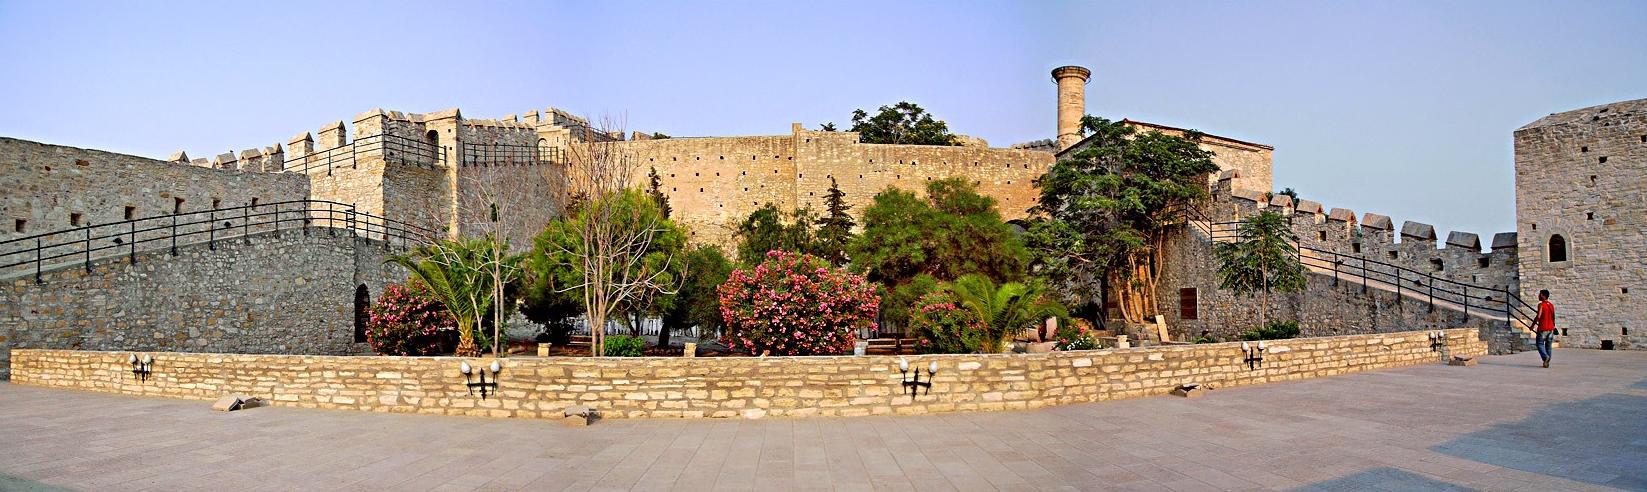 قلعة تشيشمي..متعة السياحية التاريخية بتركيا